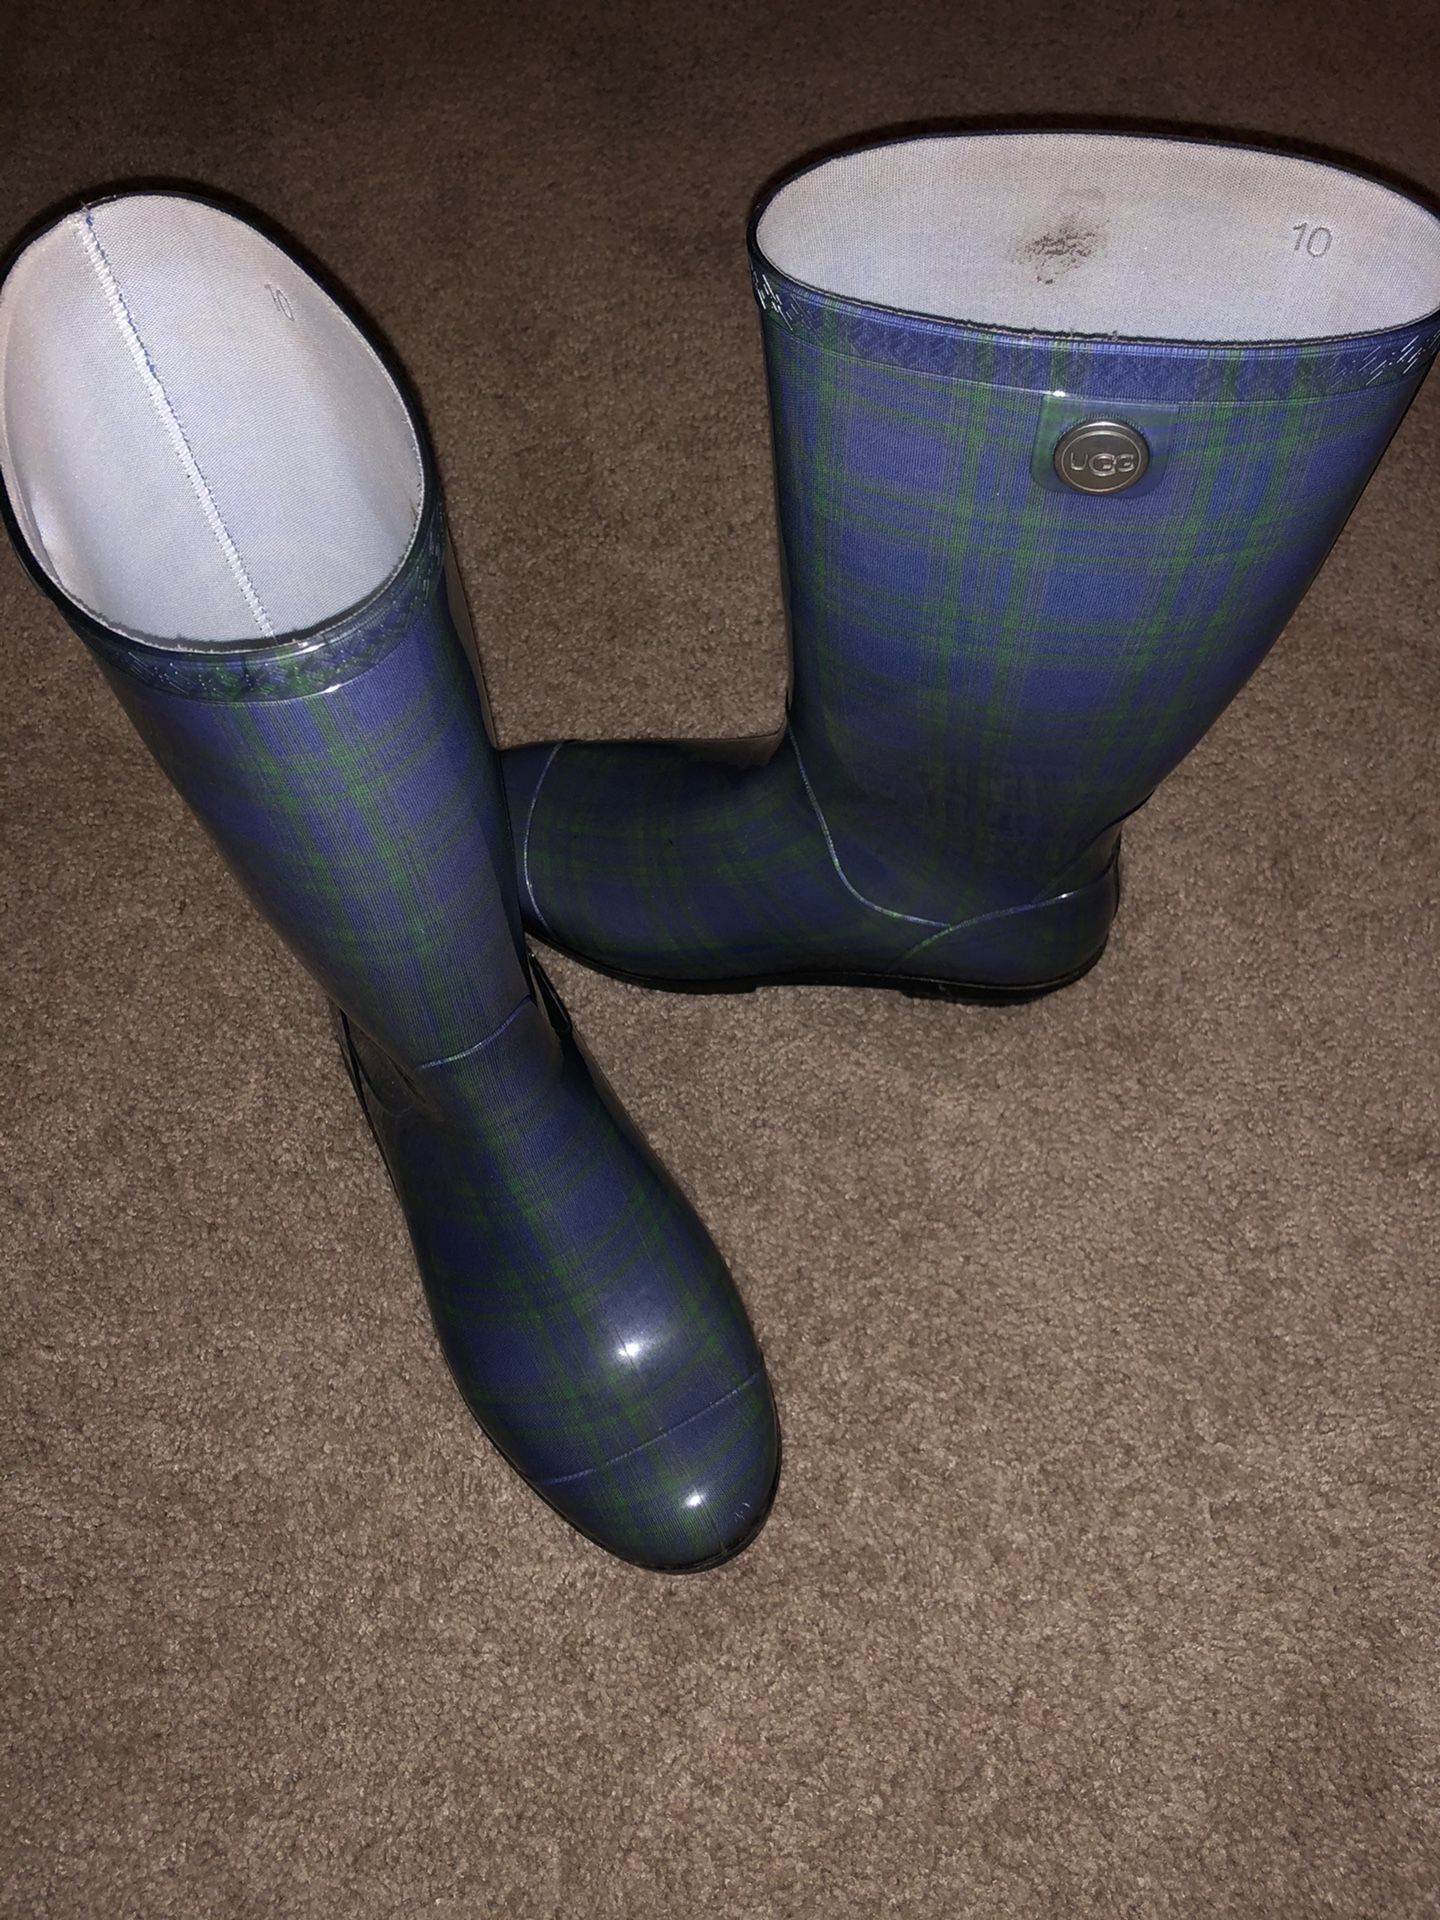 UGG Rain Boots size 10